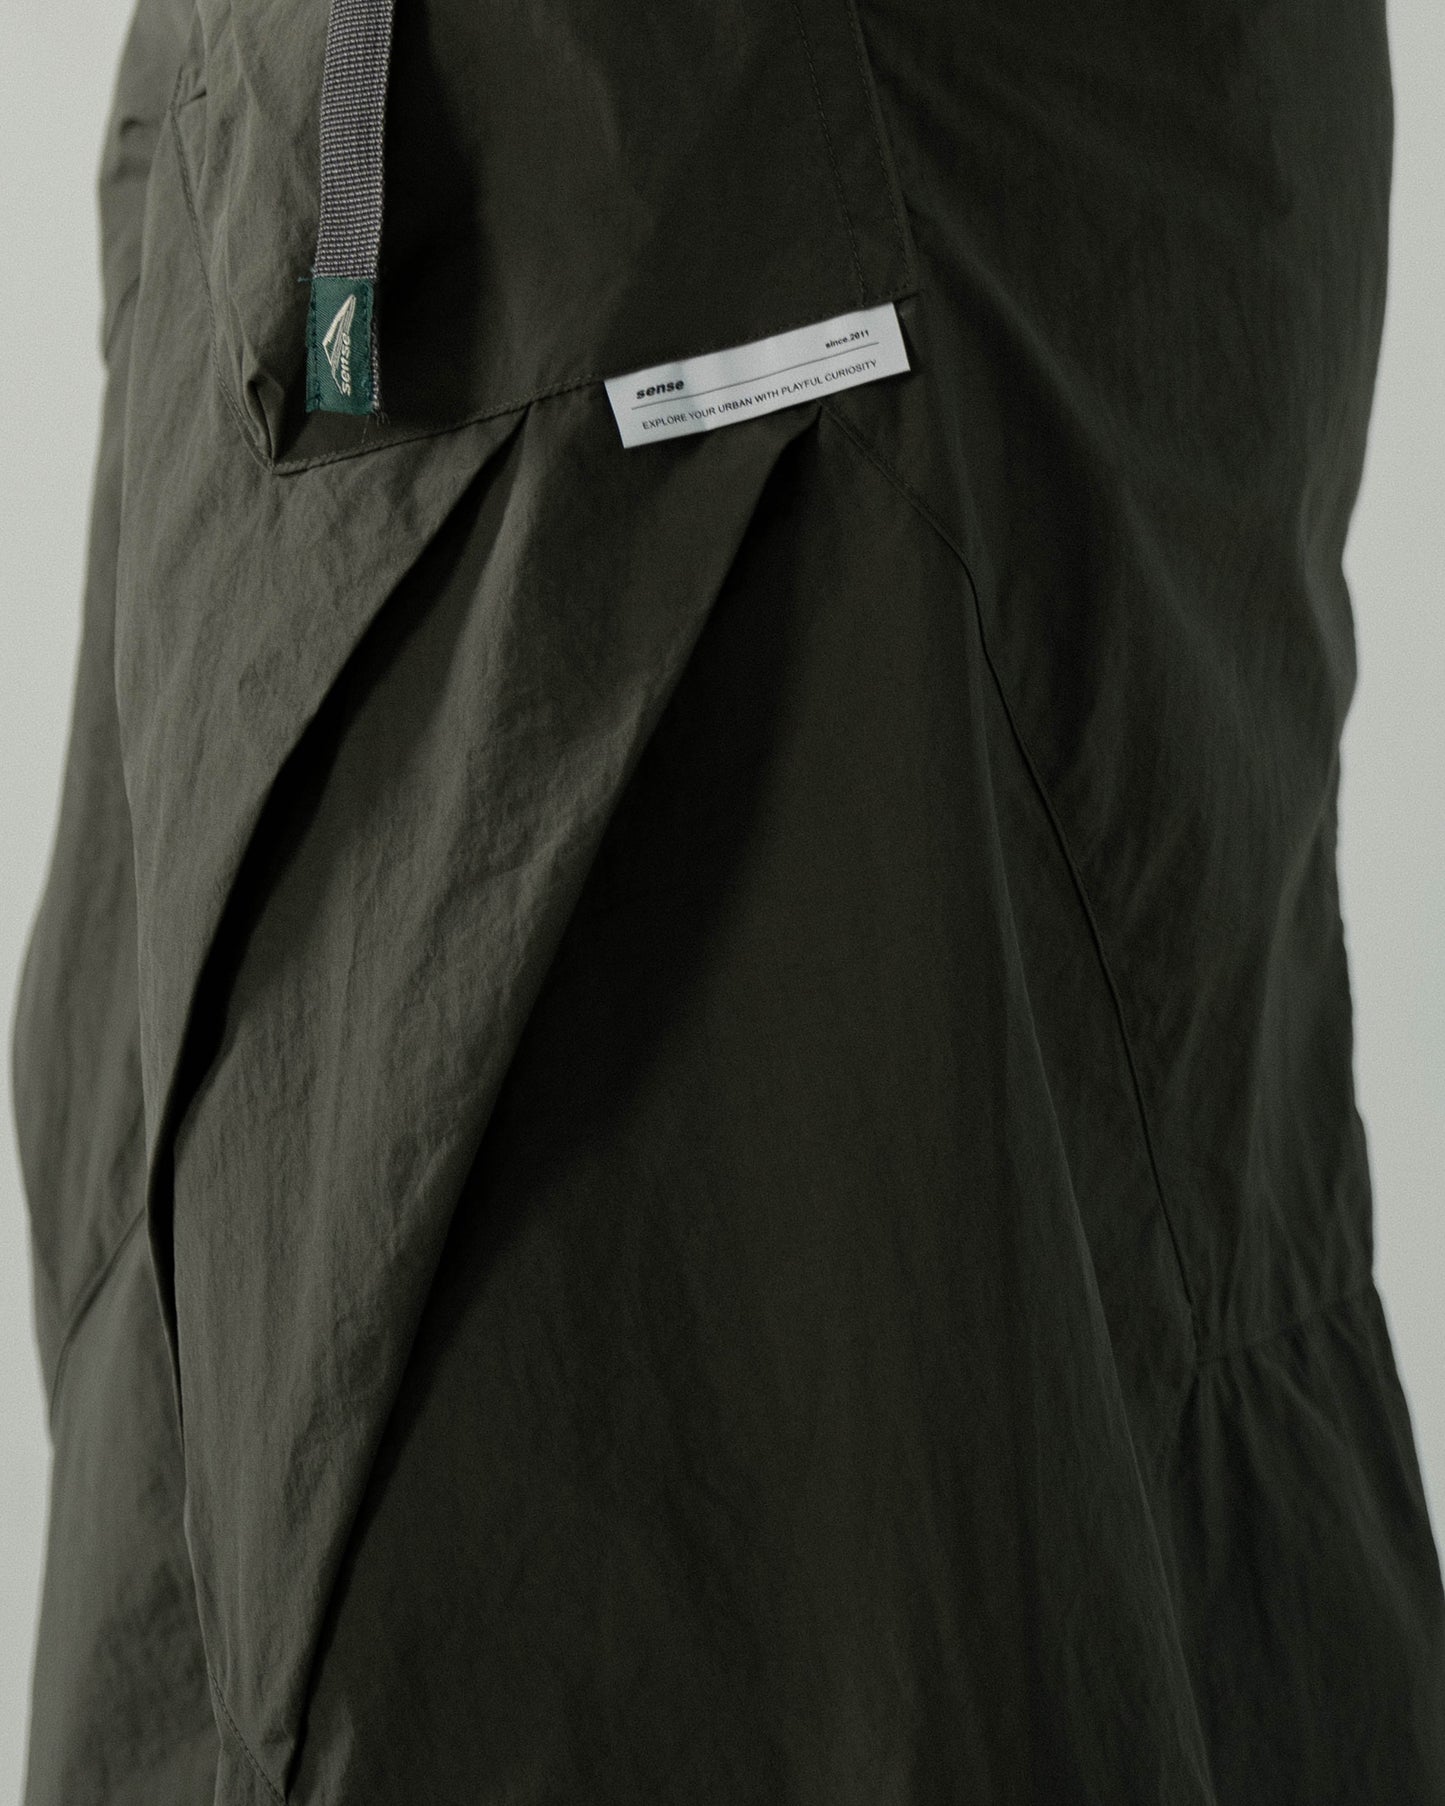 
                  
                    Parachute Straight Skirt Green【L23-27GN】
                  
                